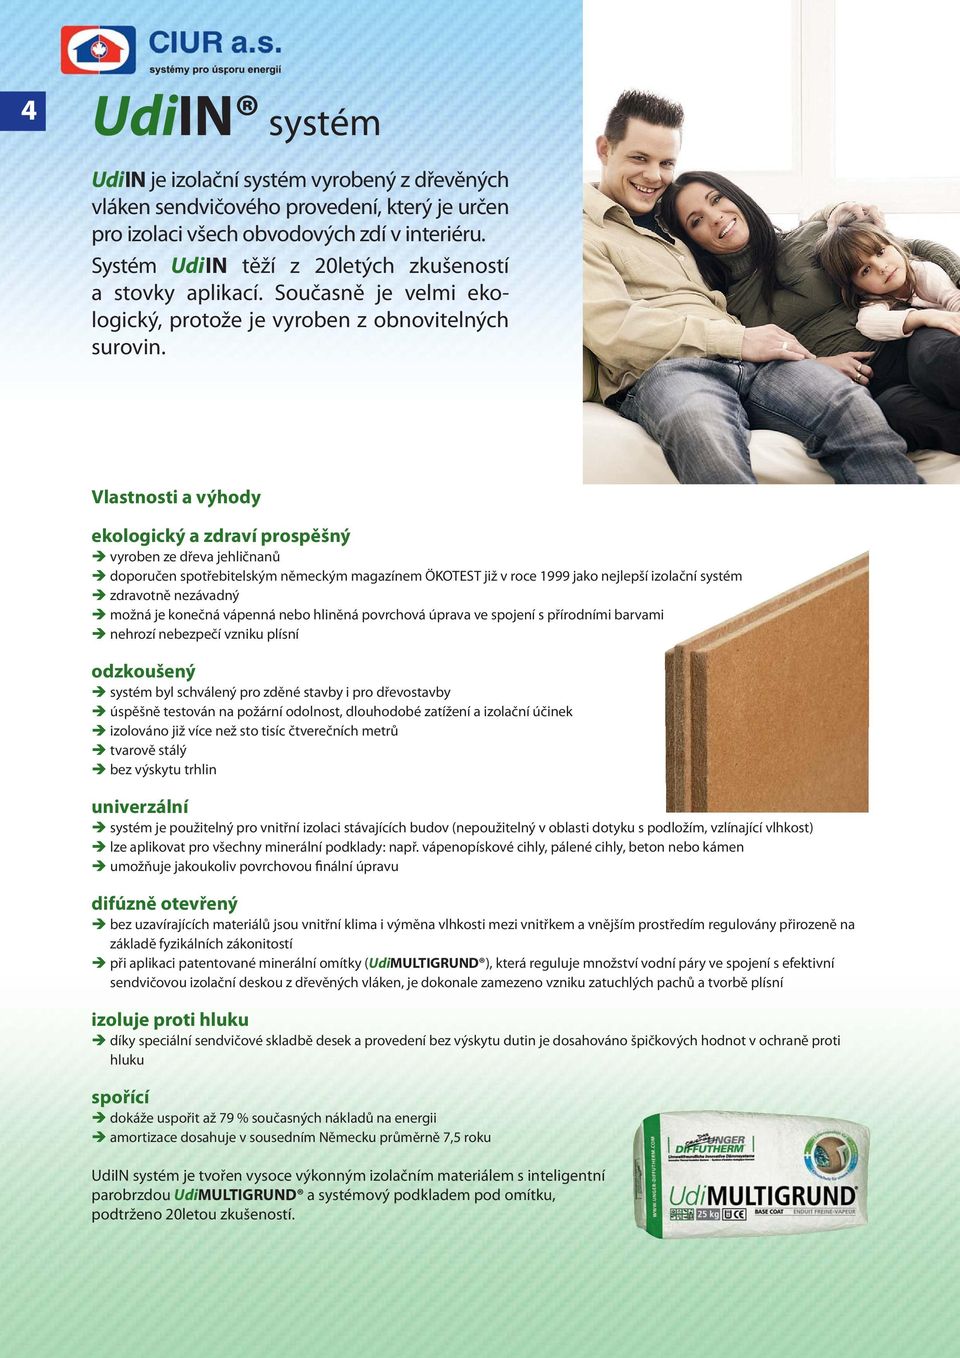 Vlastnosti a výhody ekologický a zdraví prospěšný vyroben ze dřeva jehličnanů doporučen spotřebitelským německým magazínem ÖKOTEST již v roce 1999 jako nejlepší izolační systém zdravotně nezávadný